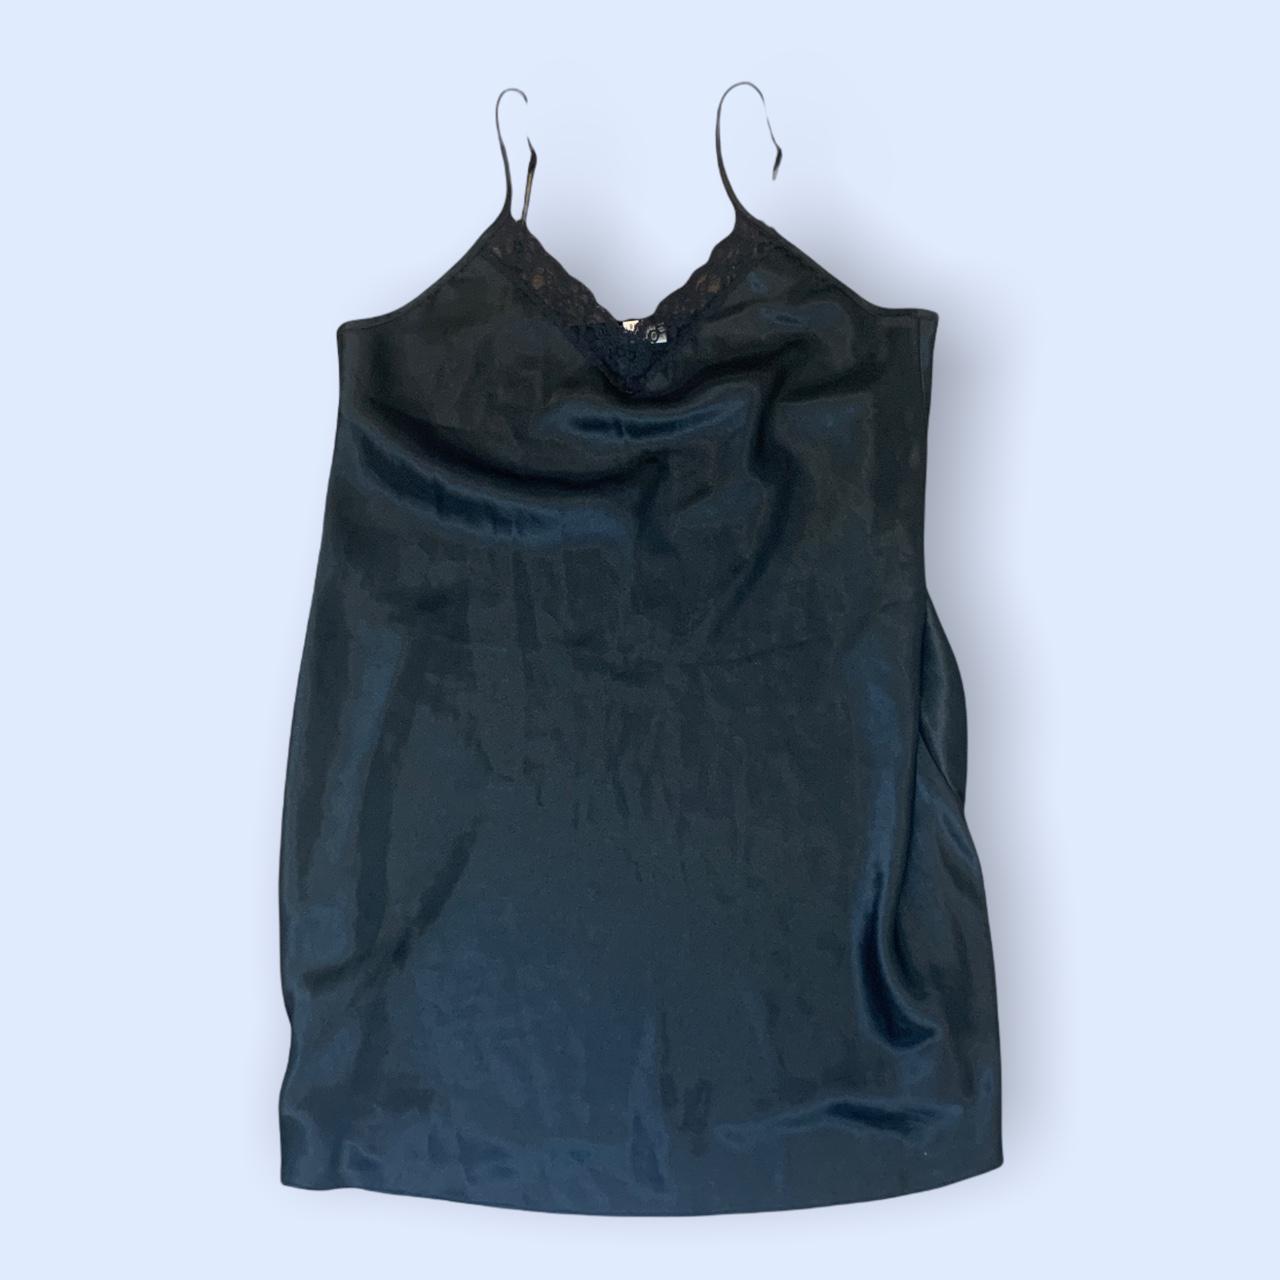 Product Image 2 - Black Lace Slip Dress 
Measurements: